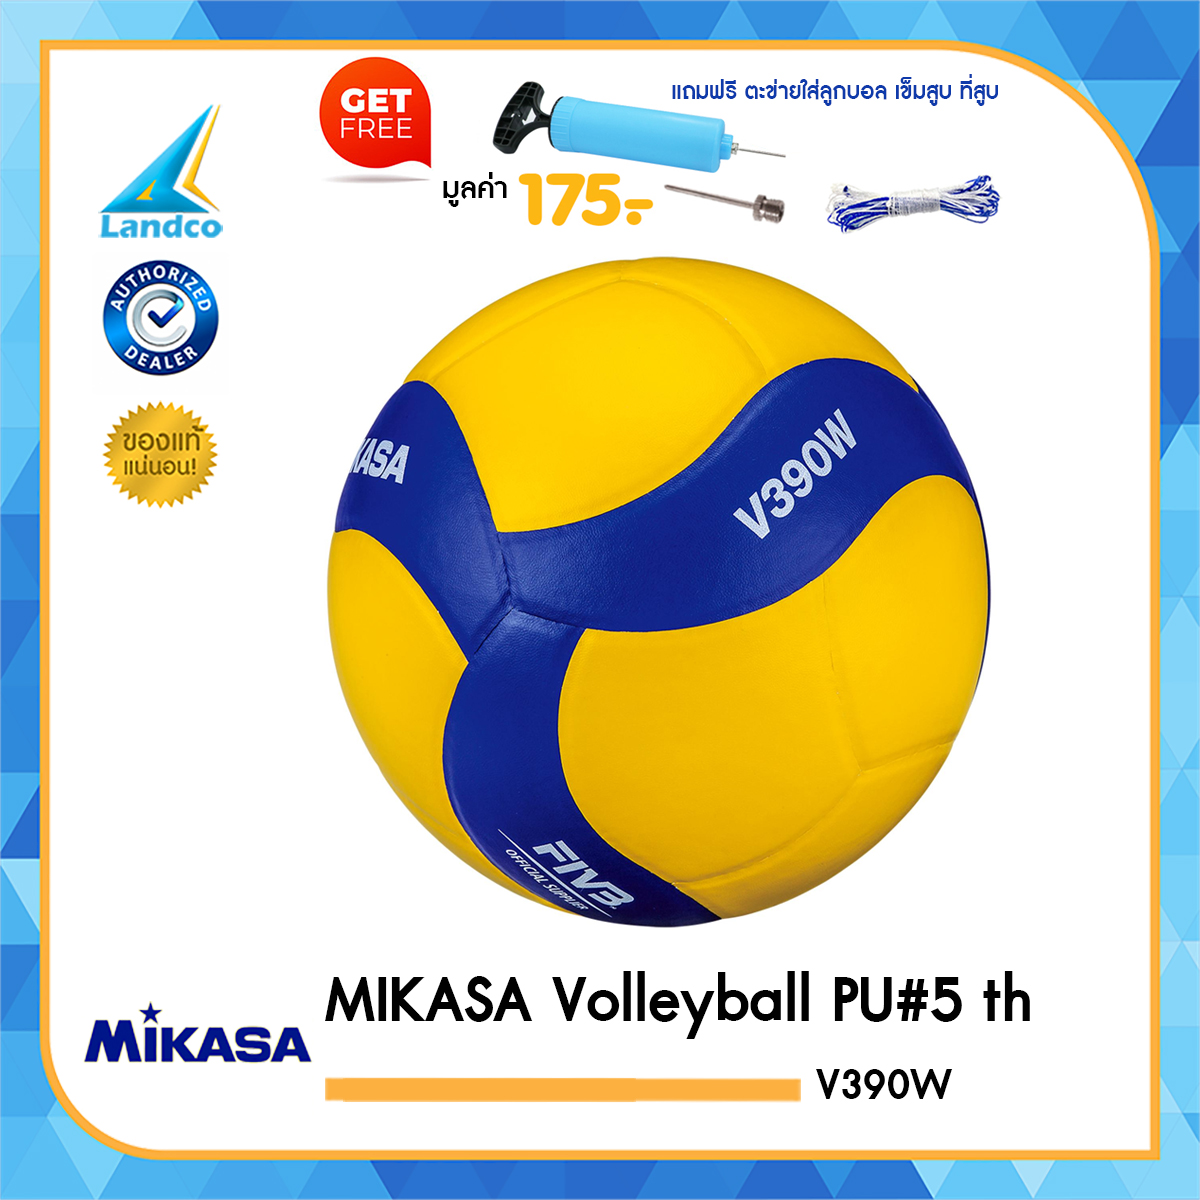 MIKASA วอลเลย์บอล มิกาซ่า Volleyball PU#5 th V390W (650) แถมฟรี ตาข่ายใส่ลูกวอลเลย์บอล + เข็มสูบสูบลม + สูบมือ SPL